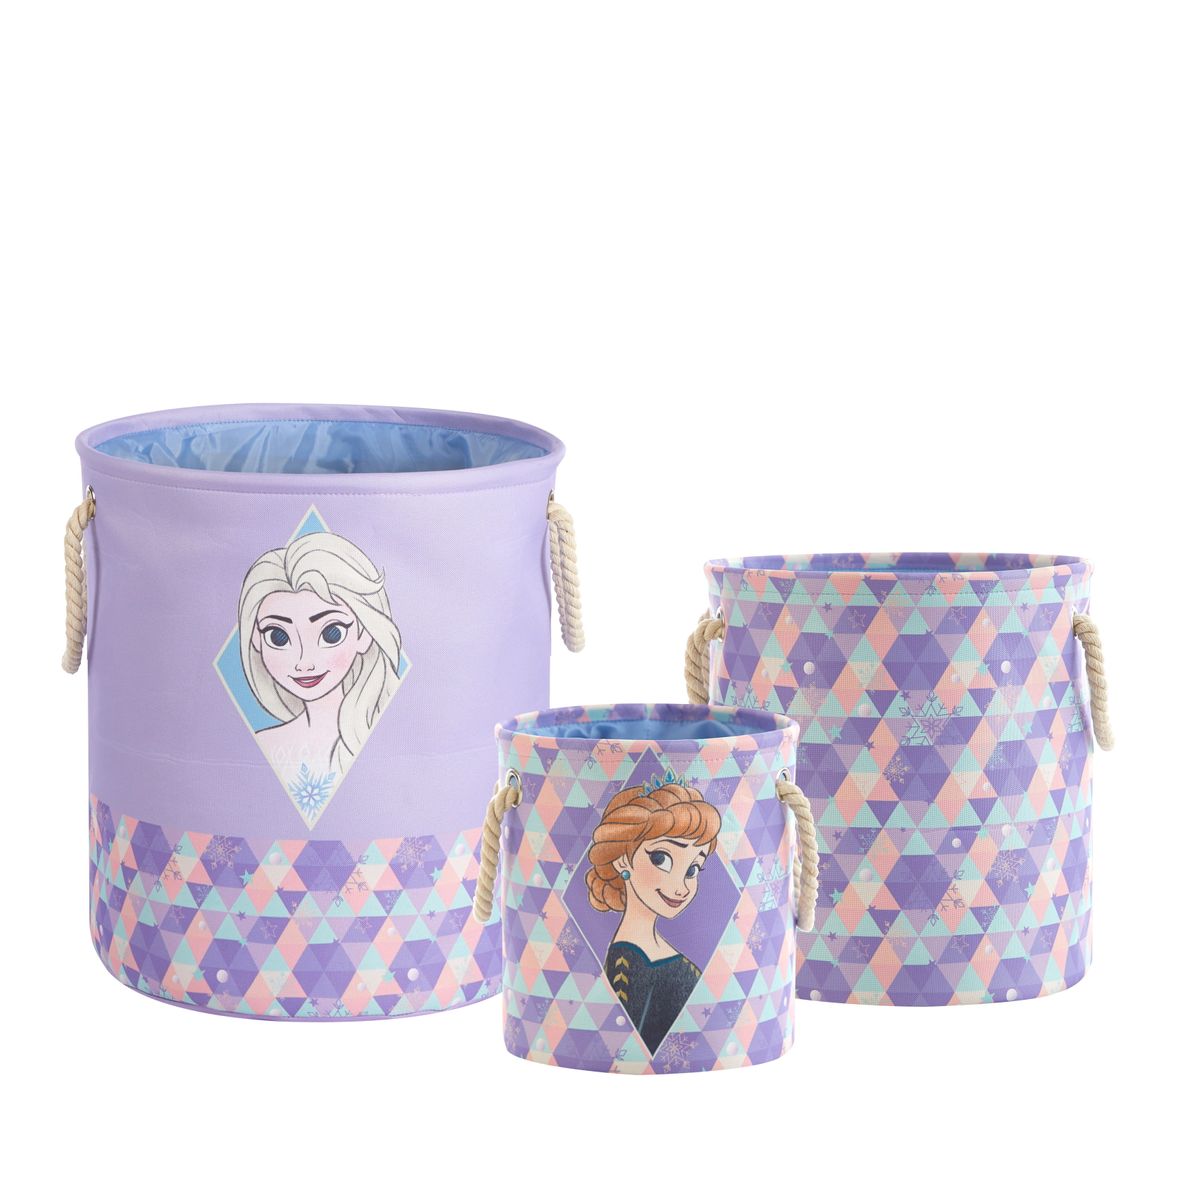 [送料無料] Disney Frozen 子供用ファブリックラウンド入れ子式収納ボックス3点セット [楽天海外通販] | Disney Frozen Kids Fabric Round Nestable Storage Bin Set, 3-Piece